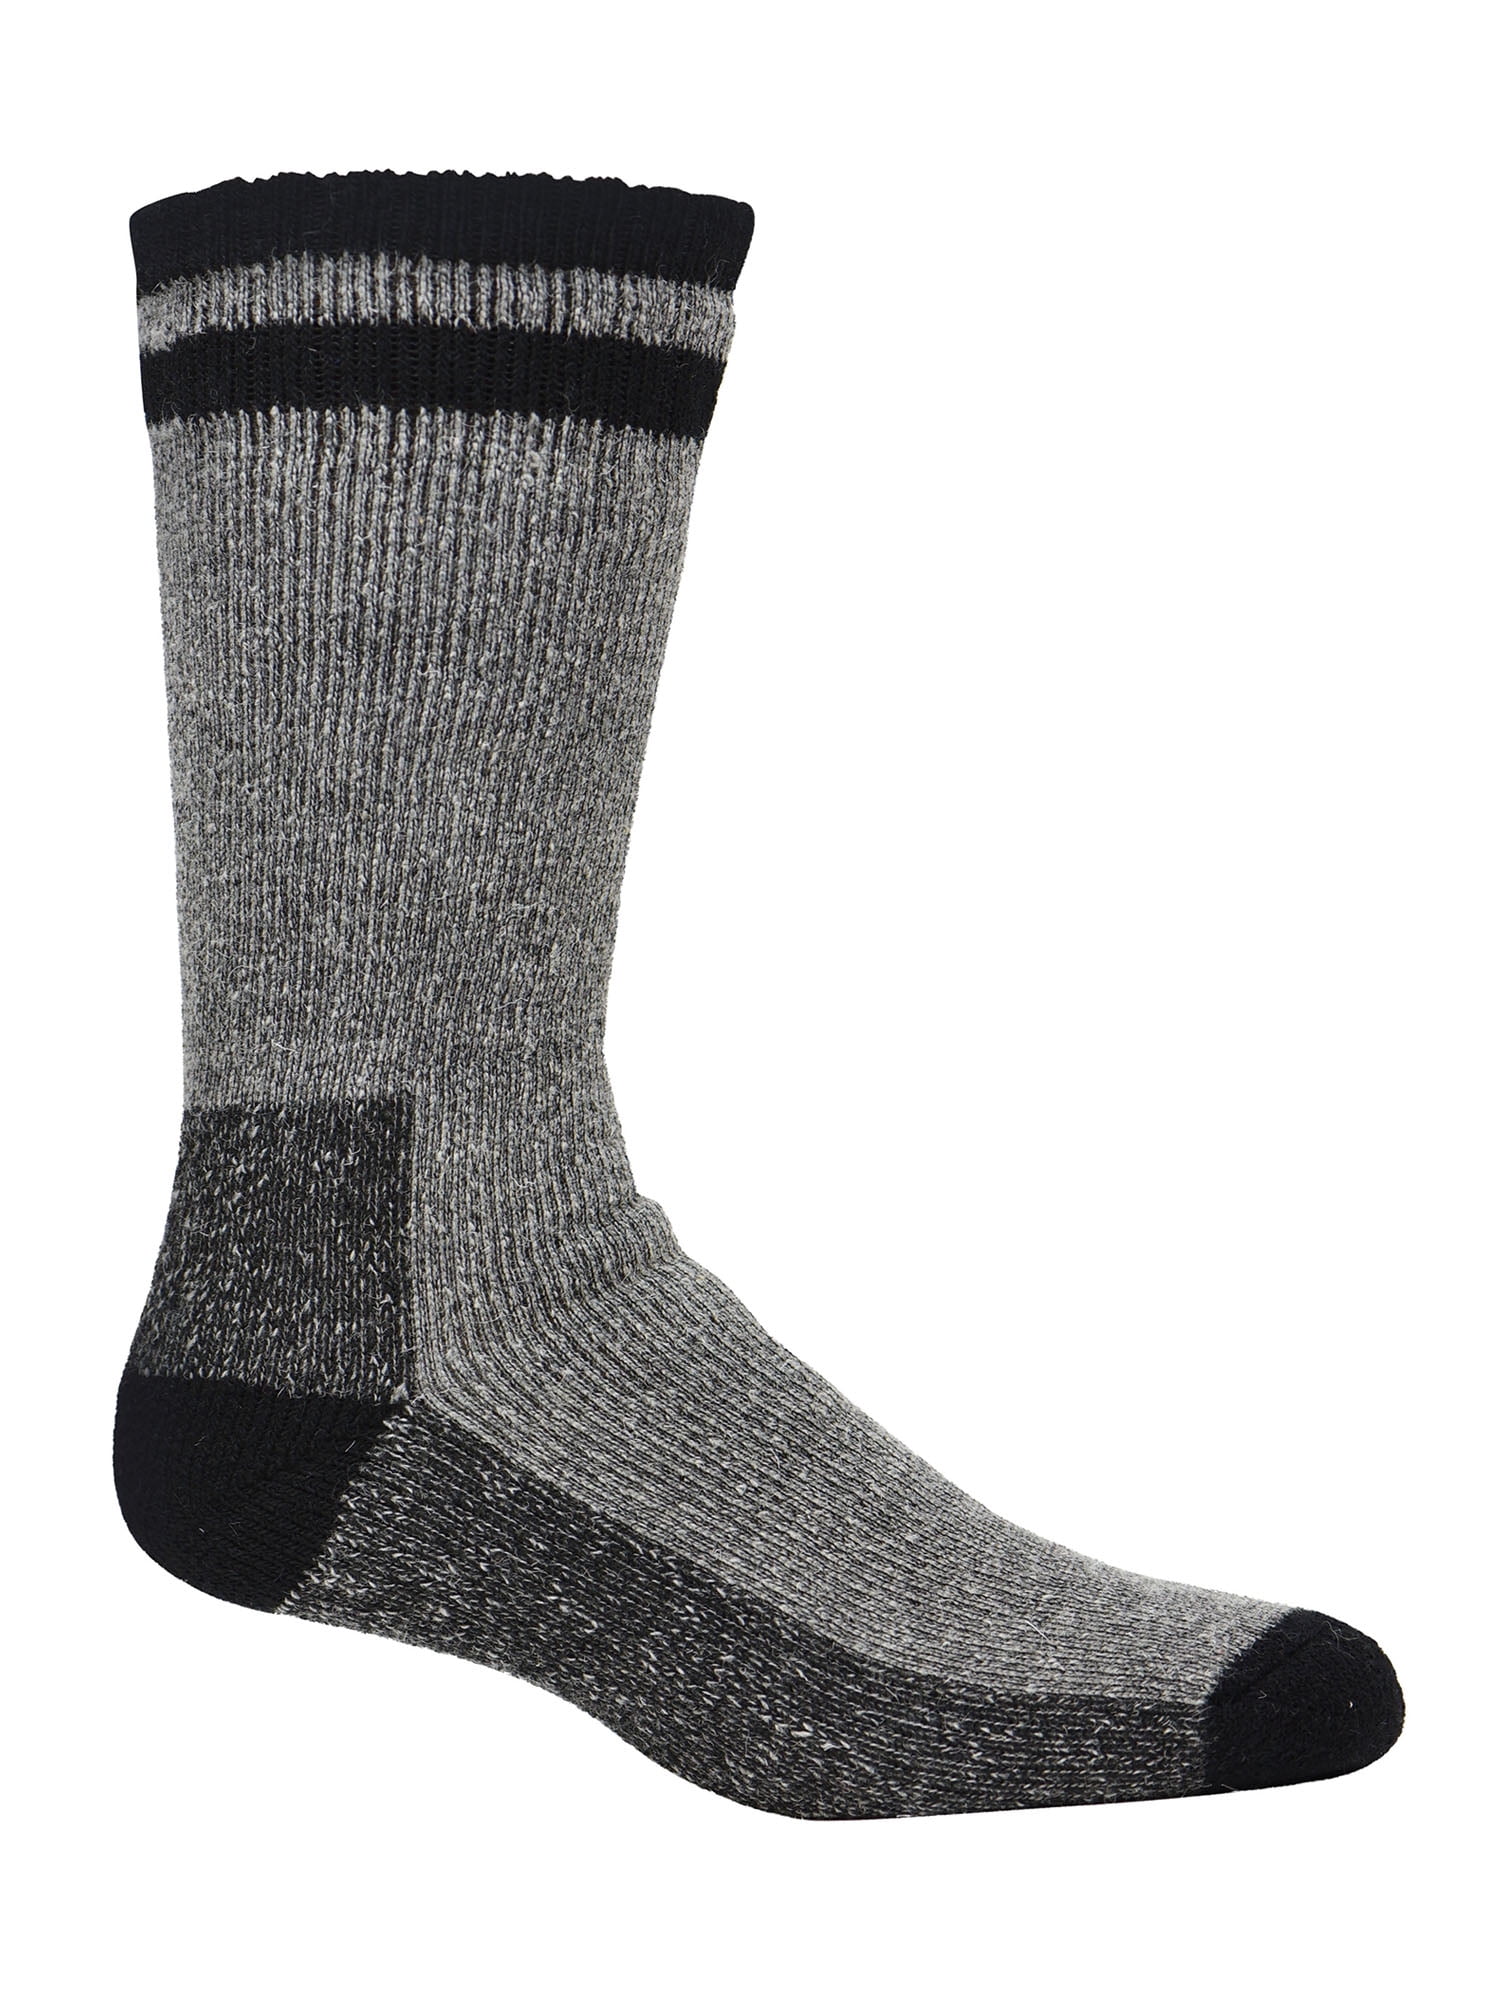 Men's Kodiak Thermal Wool Crew Socks, 2-pack - Walmart.com